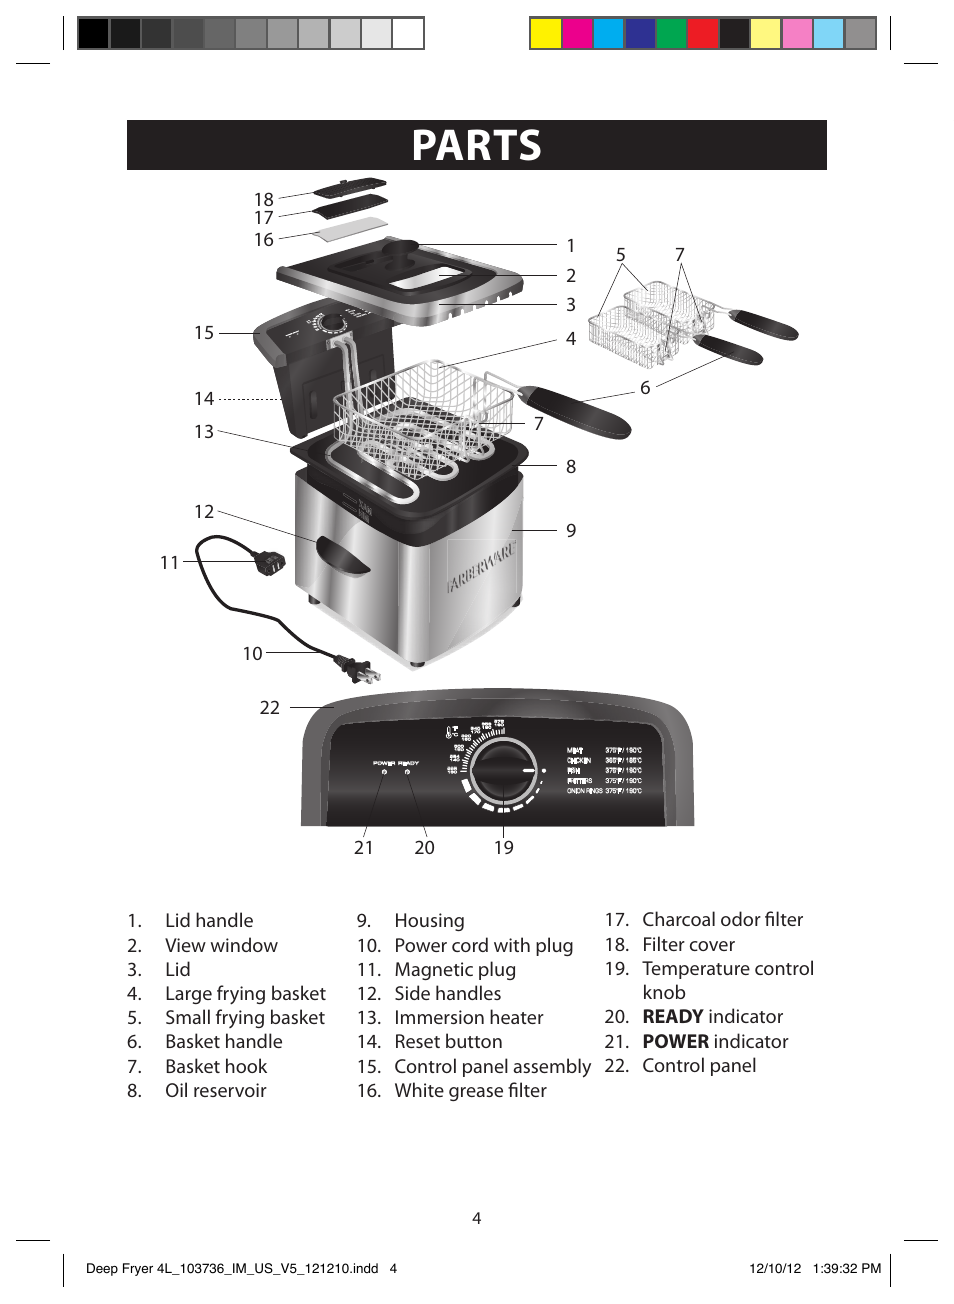 Parts, Illustrations | FARBERWARE 103736 4L Dual Deep Fryer User Manual